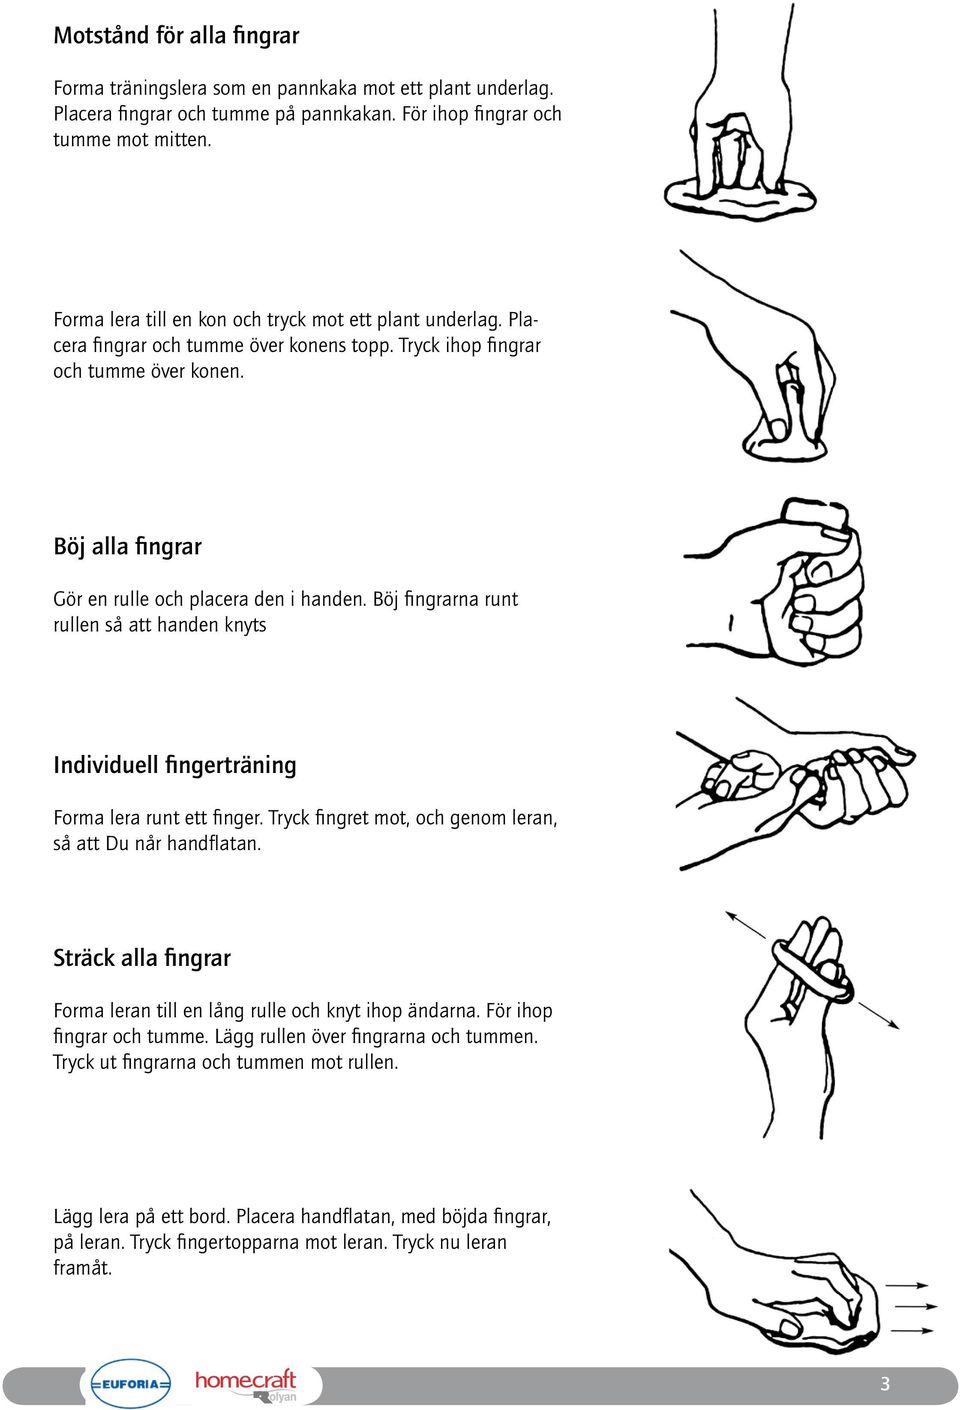 Böj fingrarna runt rullen så att handen knyts Individuell fingerträning Forma lera runt ett finger. Tryck fingret mot, och genom leran, så att Du når handflatan.